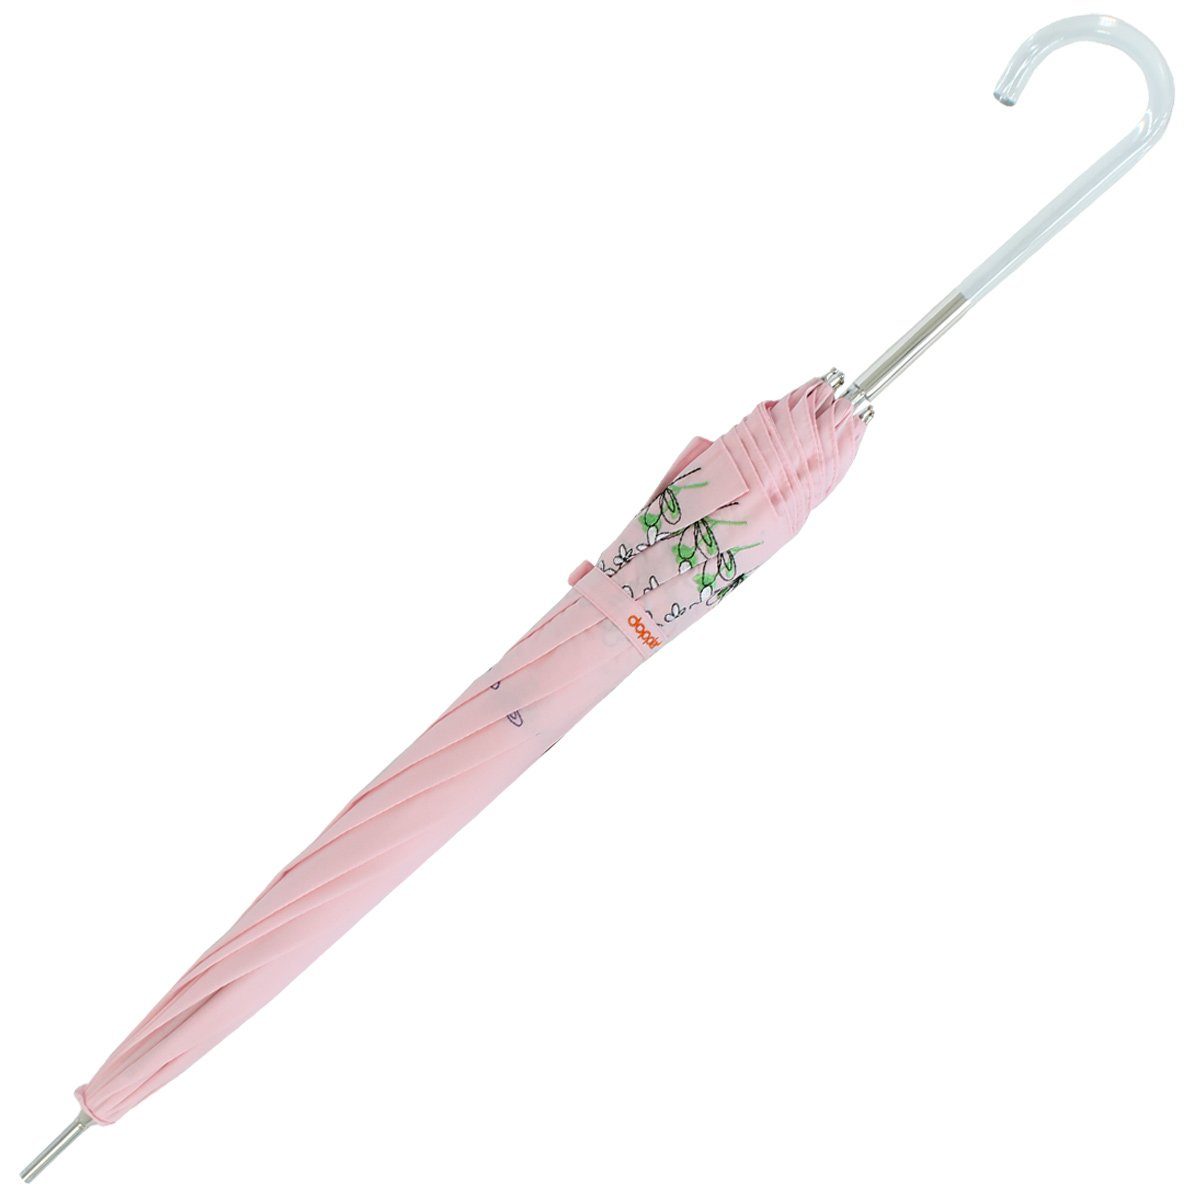 Rand Lady transparentem Kunststoff der und Griff Regenschirm rosa ist wunderschön Schutz Butterfly, Wiesenblumen bestickt, Langregenschirm - besteht Sonnen der UV mit aus doppler®